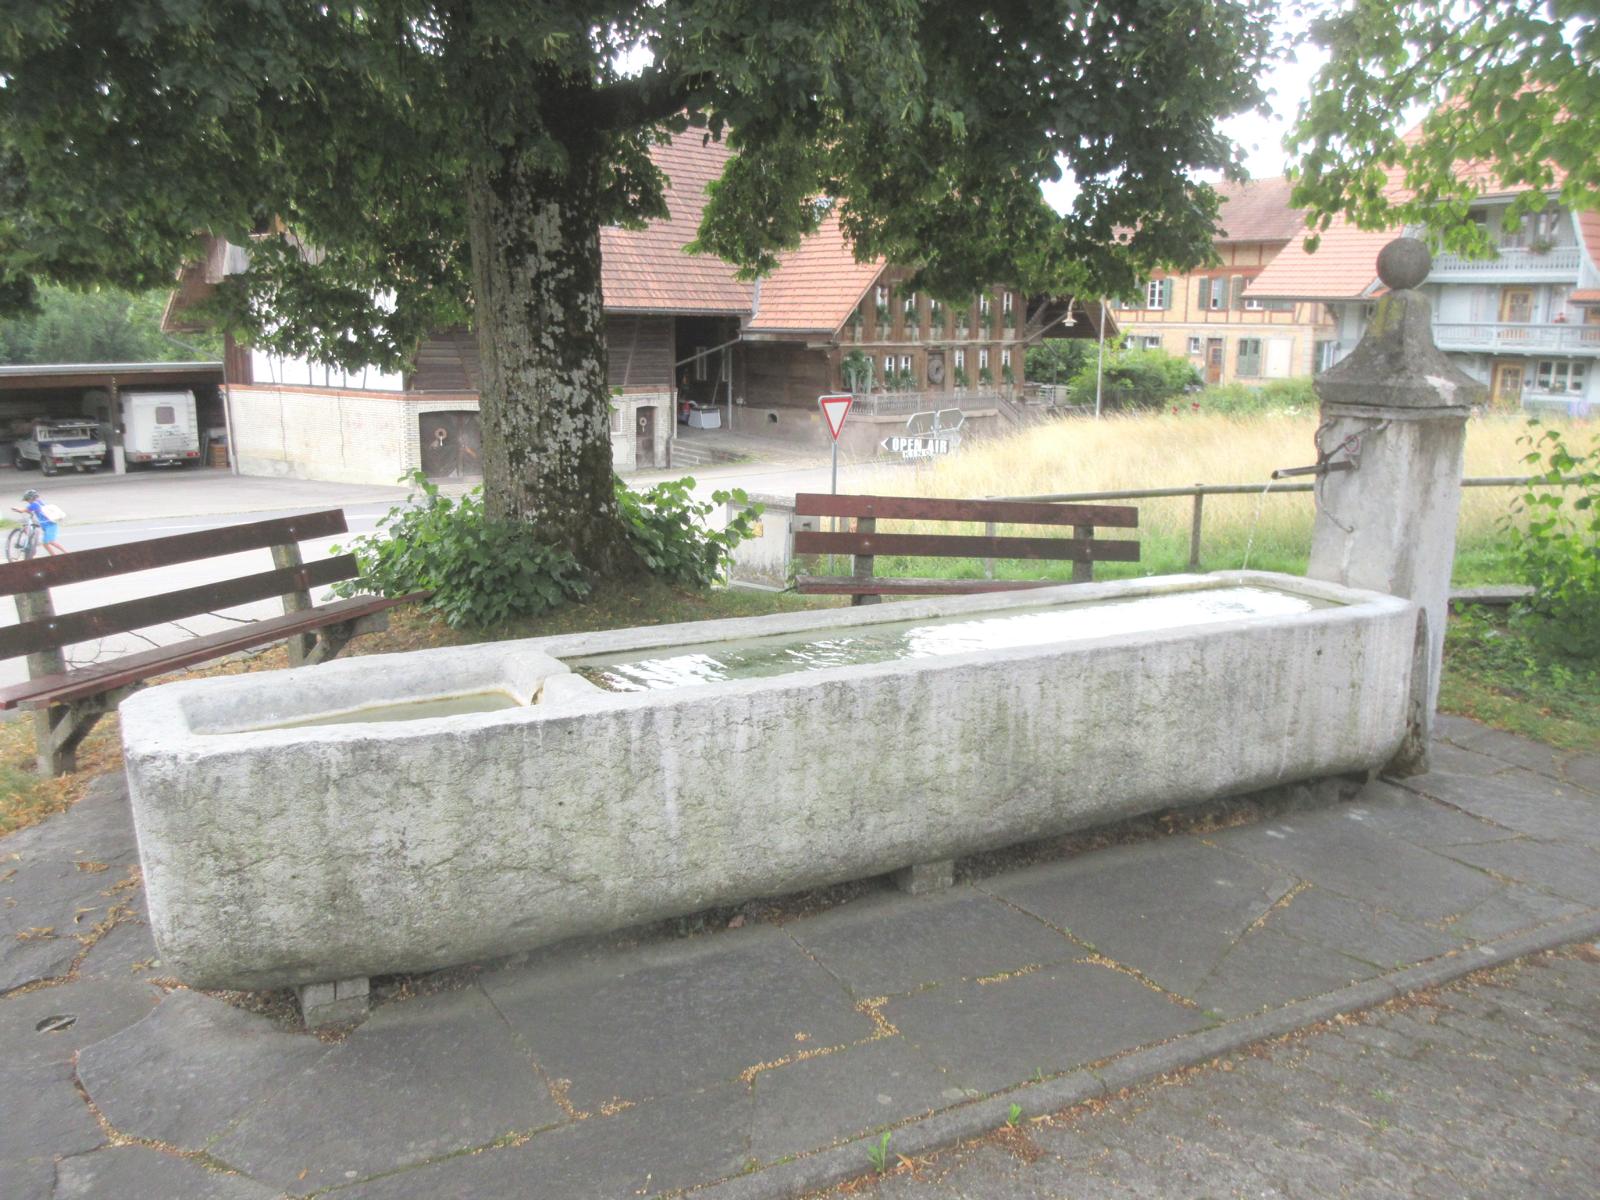 Sekunderschulhaus *** 1787 (Stock), 1843 (Trog) *** Solothurner Kalk; monolithisches Becken, zweigeteilt *** Solothurner Kalk; viereckiger Stud, pyramidenförmiger Aufsatz mit Kugel *** Symbol "Trinkwasser", <a href="./files/wasseranalyse_be_-_luetzelflueh.pdf" target="_blank">Wasseranalyse</a>